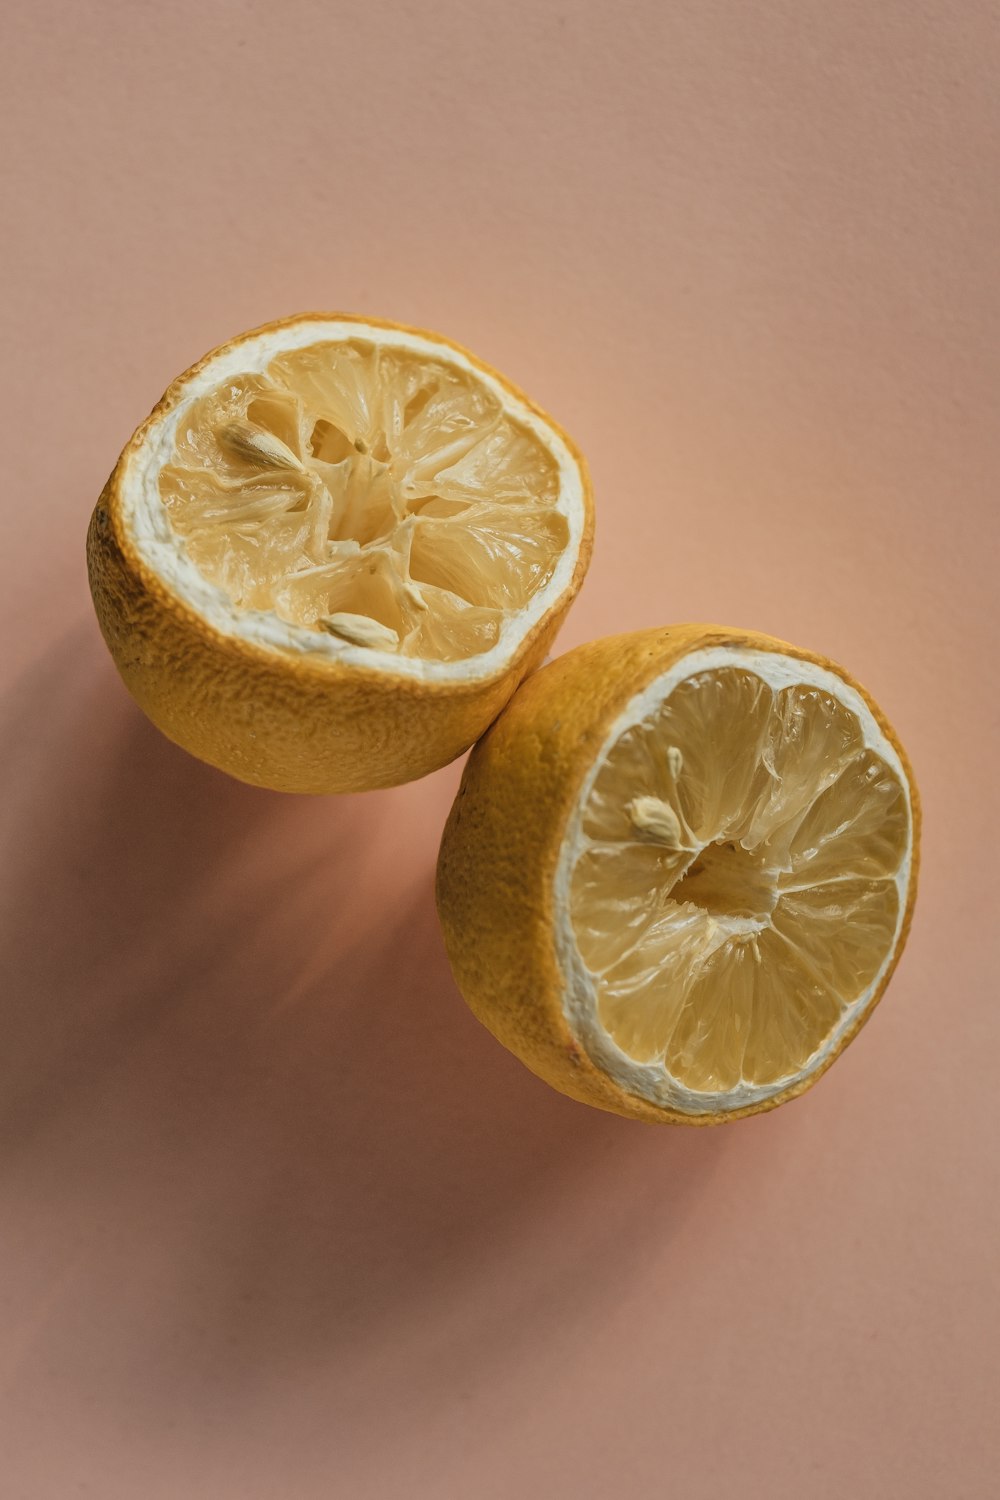 one sliced lemon